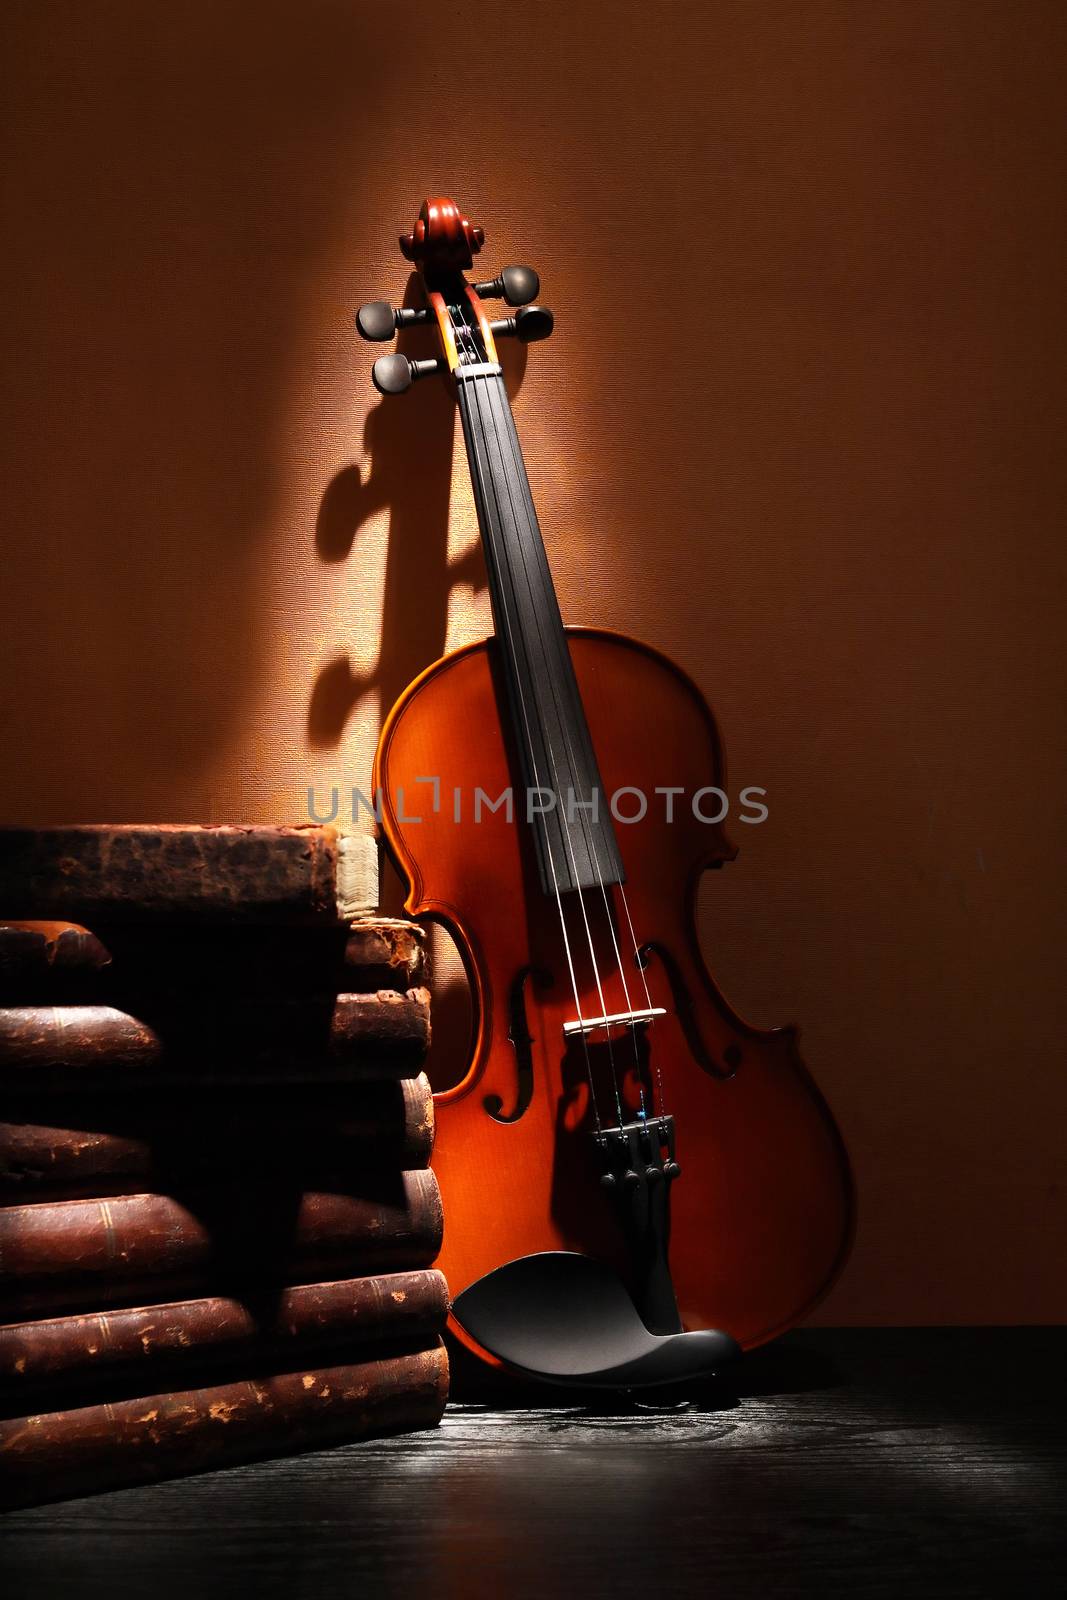 Violin Near Books by kvkirillov